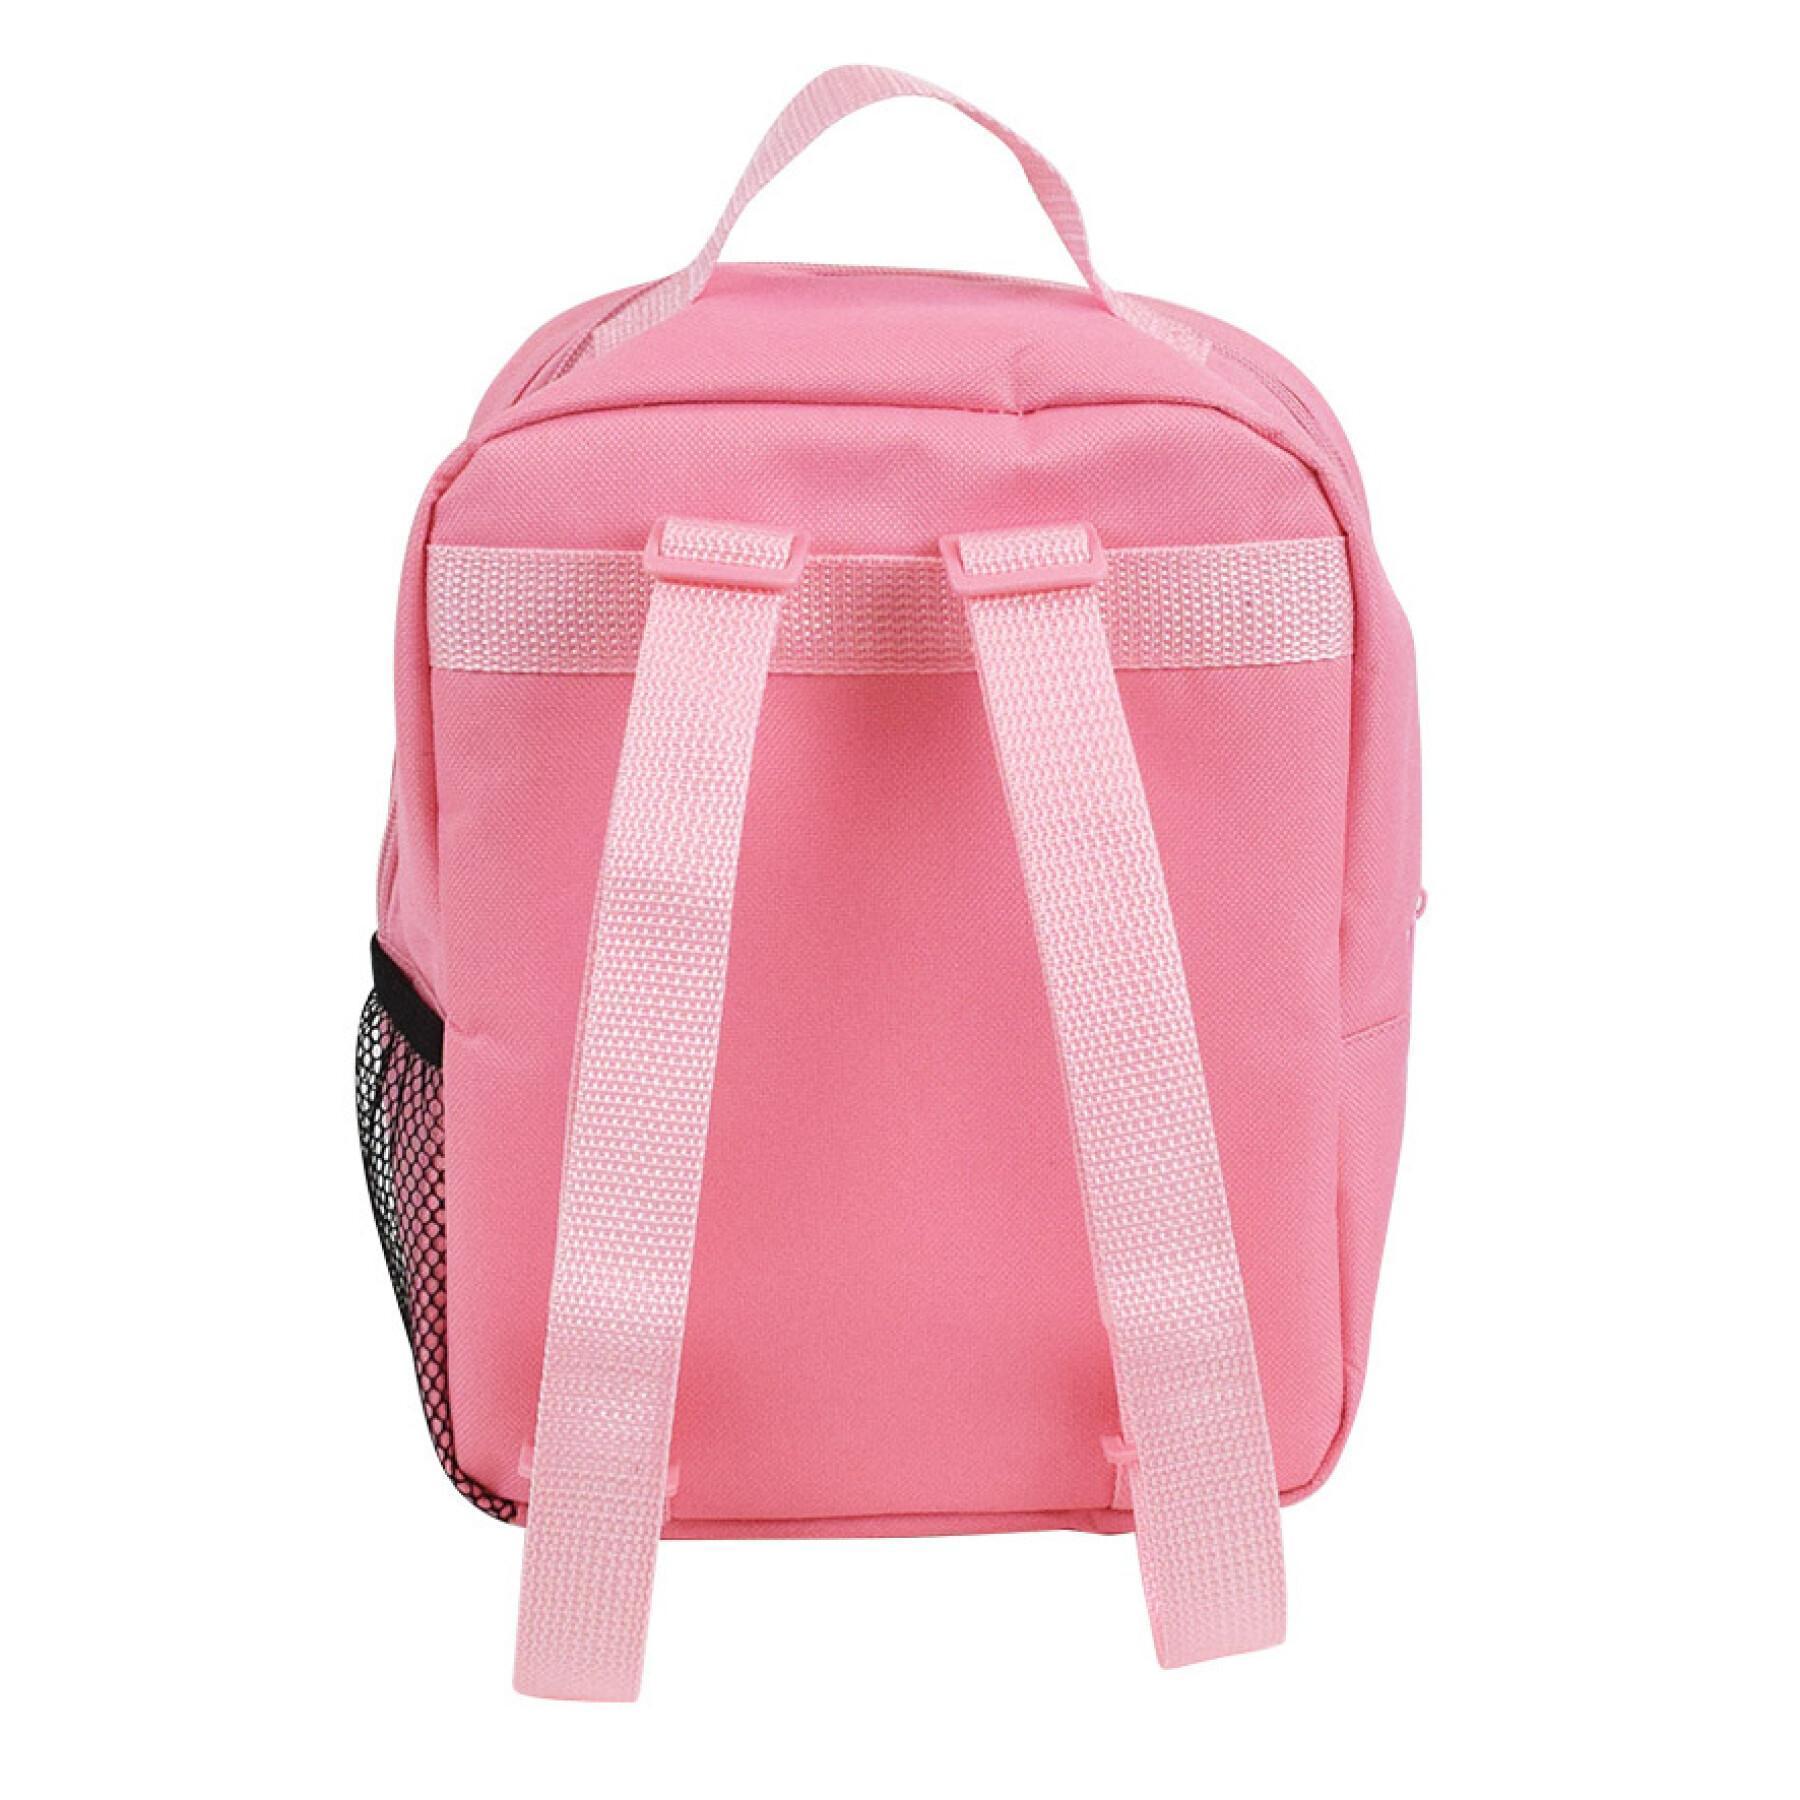 Children's insulated backpack Jemini Ballerine